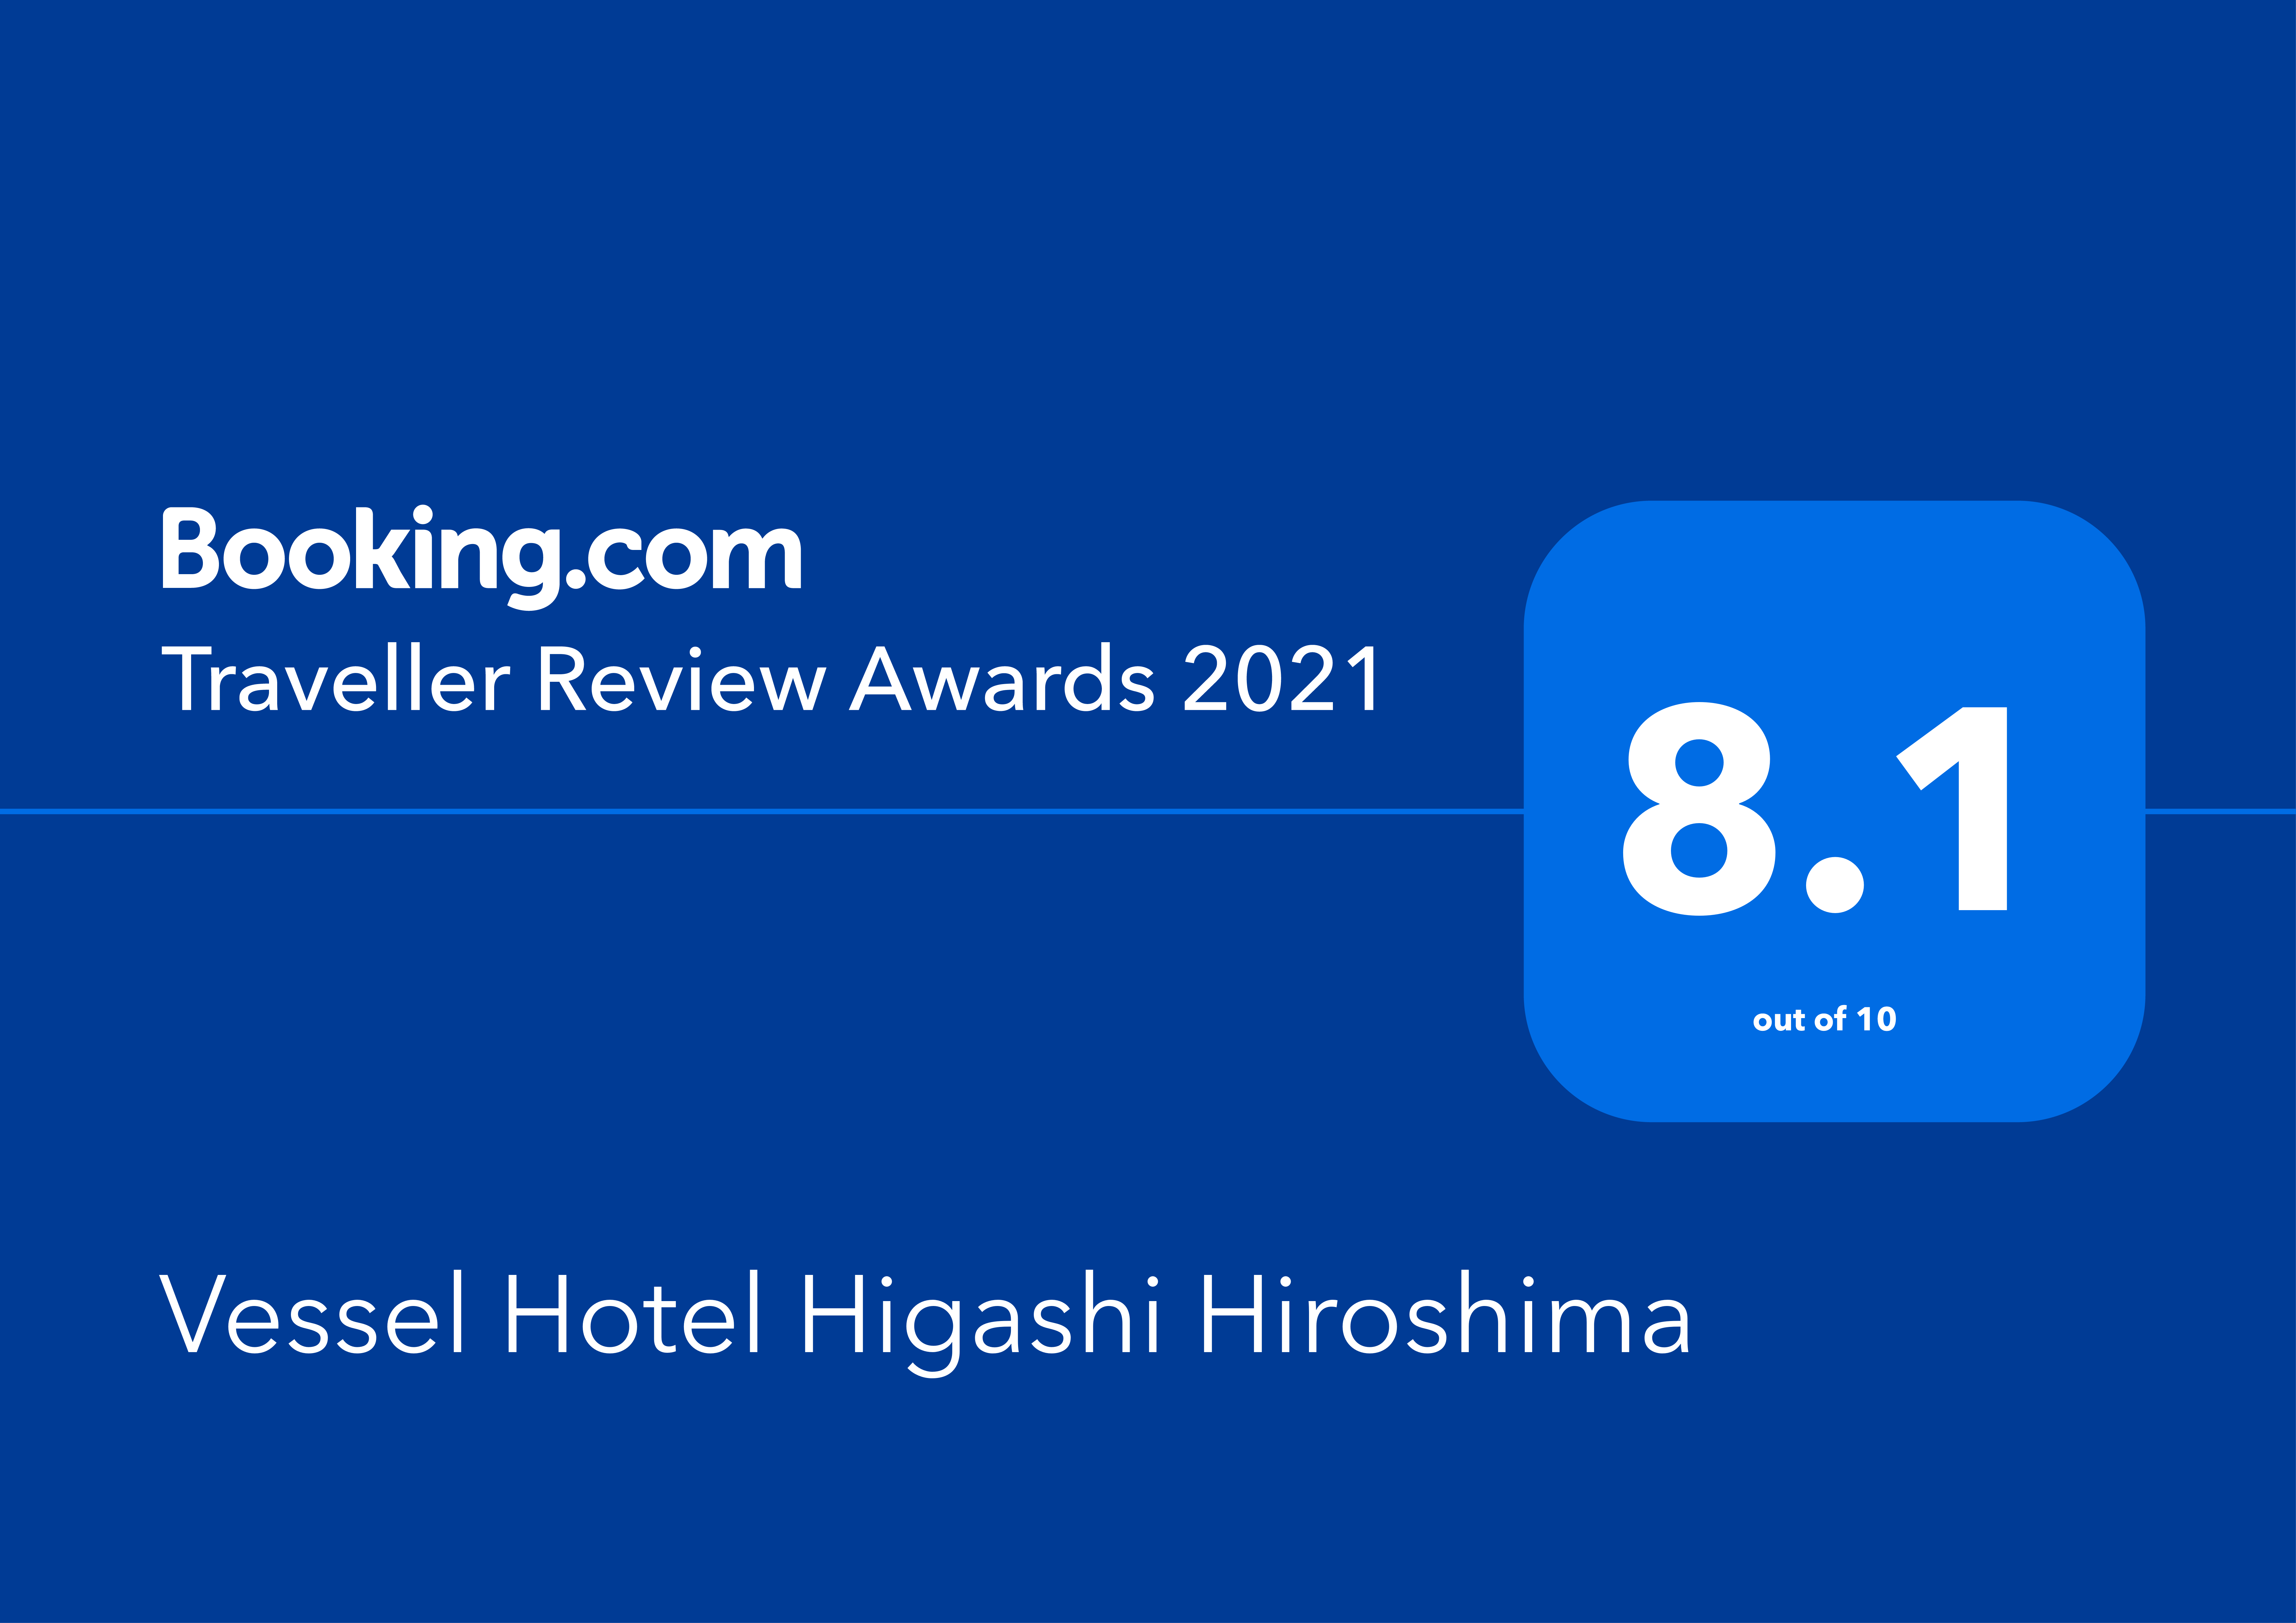 Booking.com「Traveller Review Awards 2021」受賞